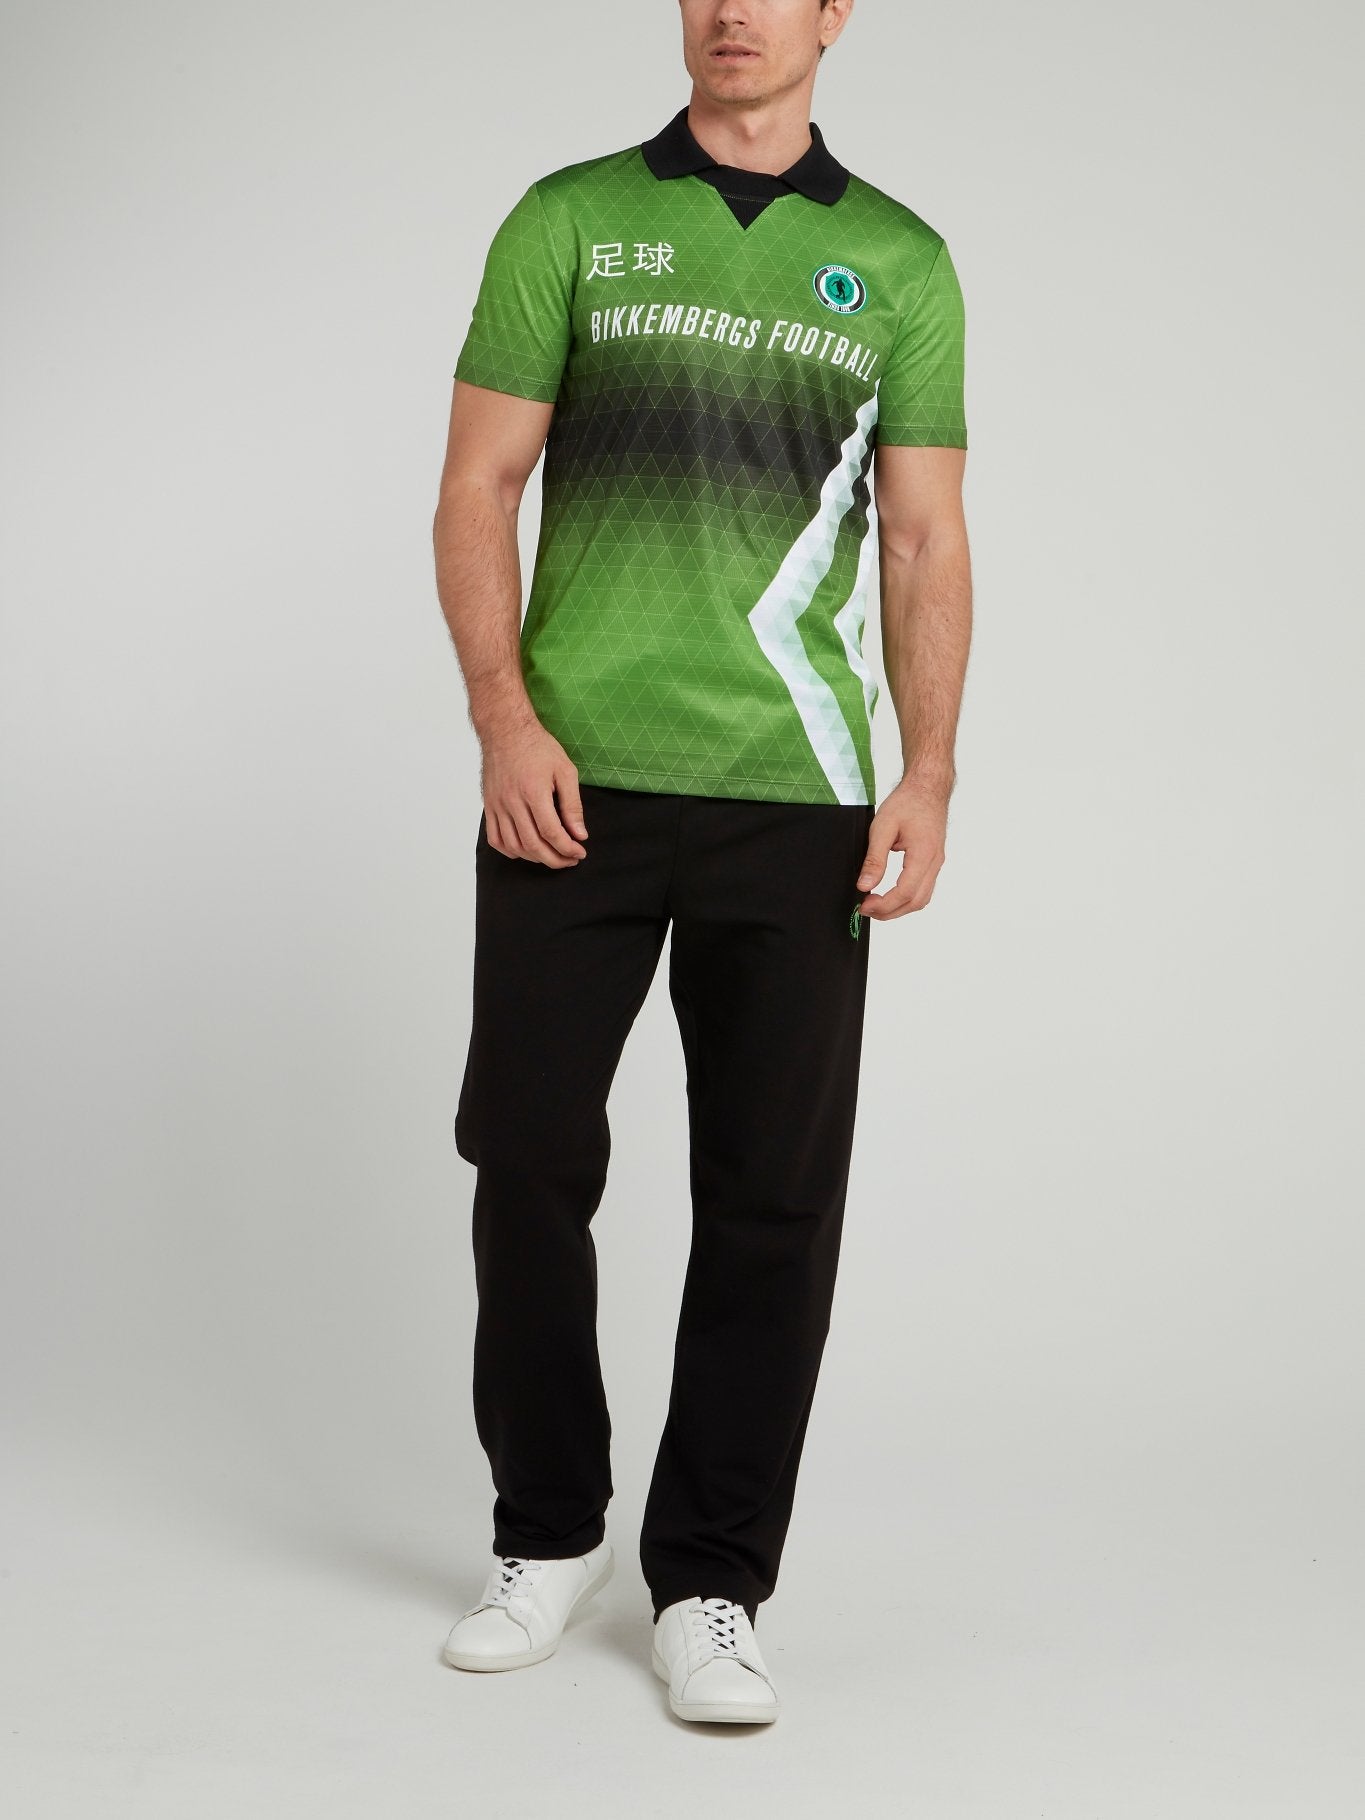 Зеленая спортивная рубашка поло с геометрическим принтом